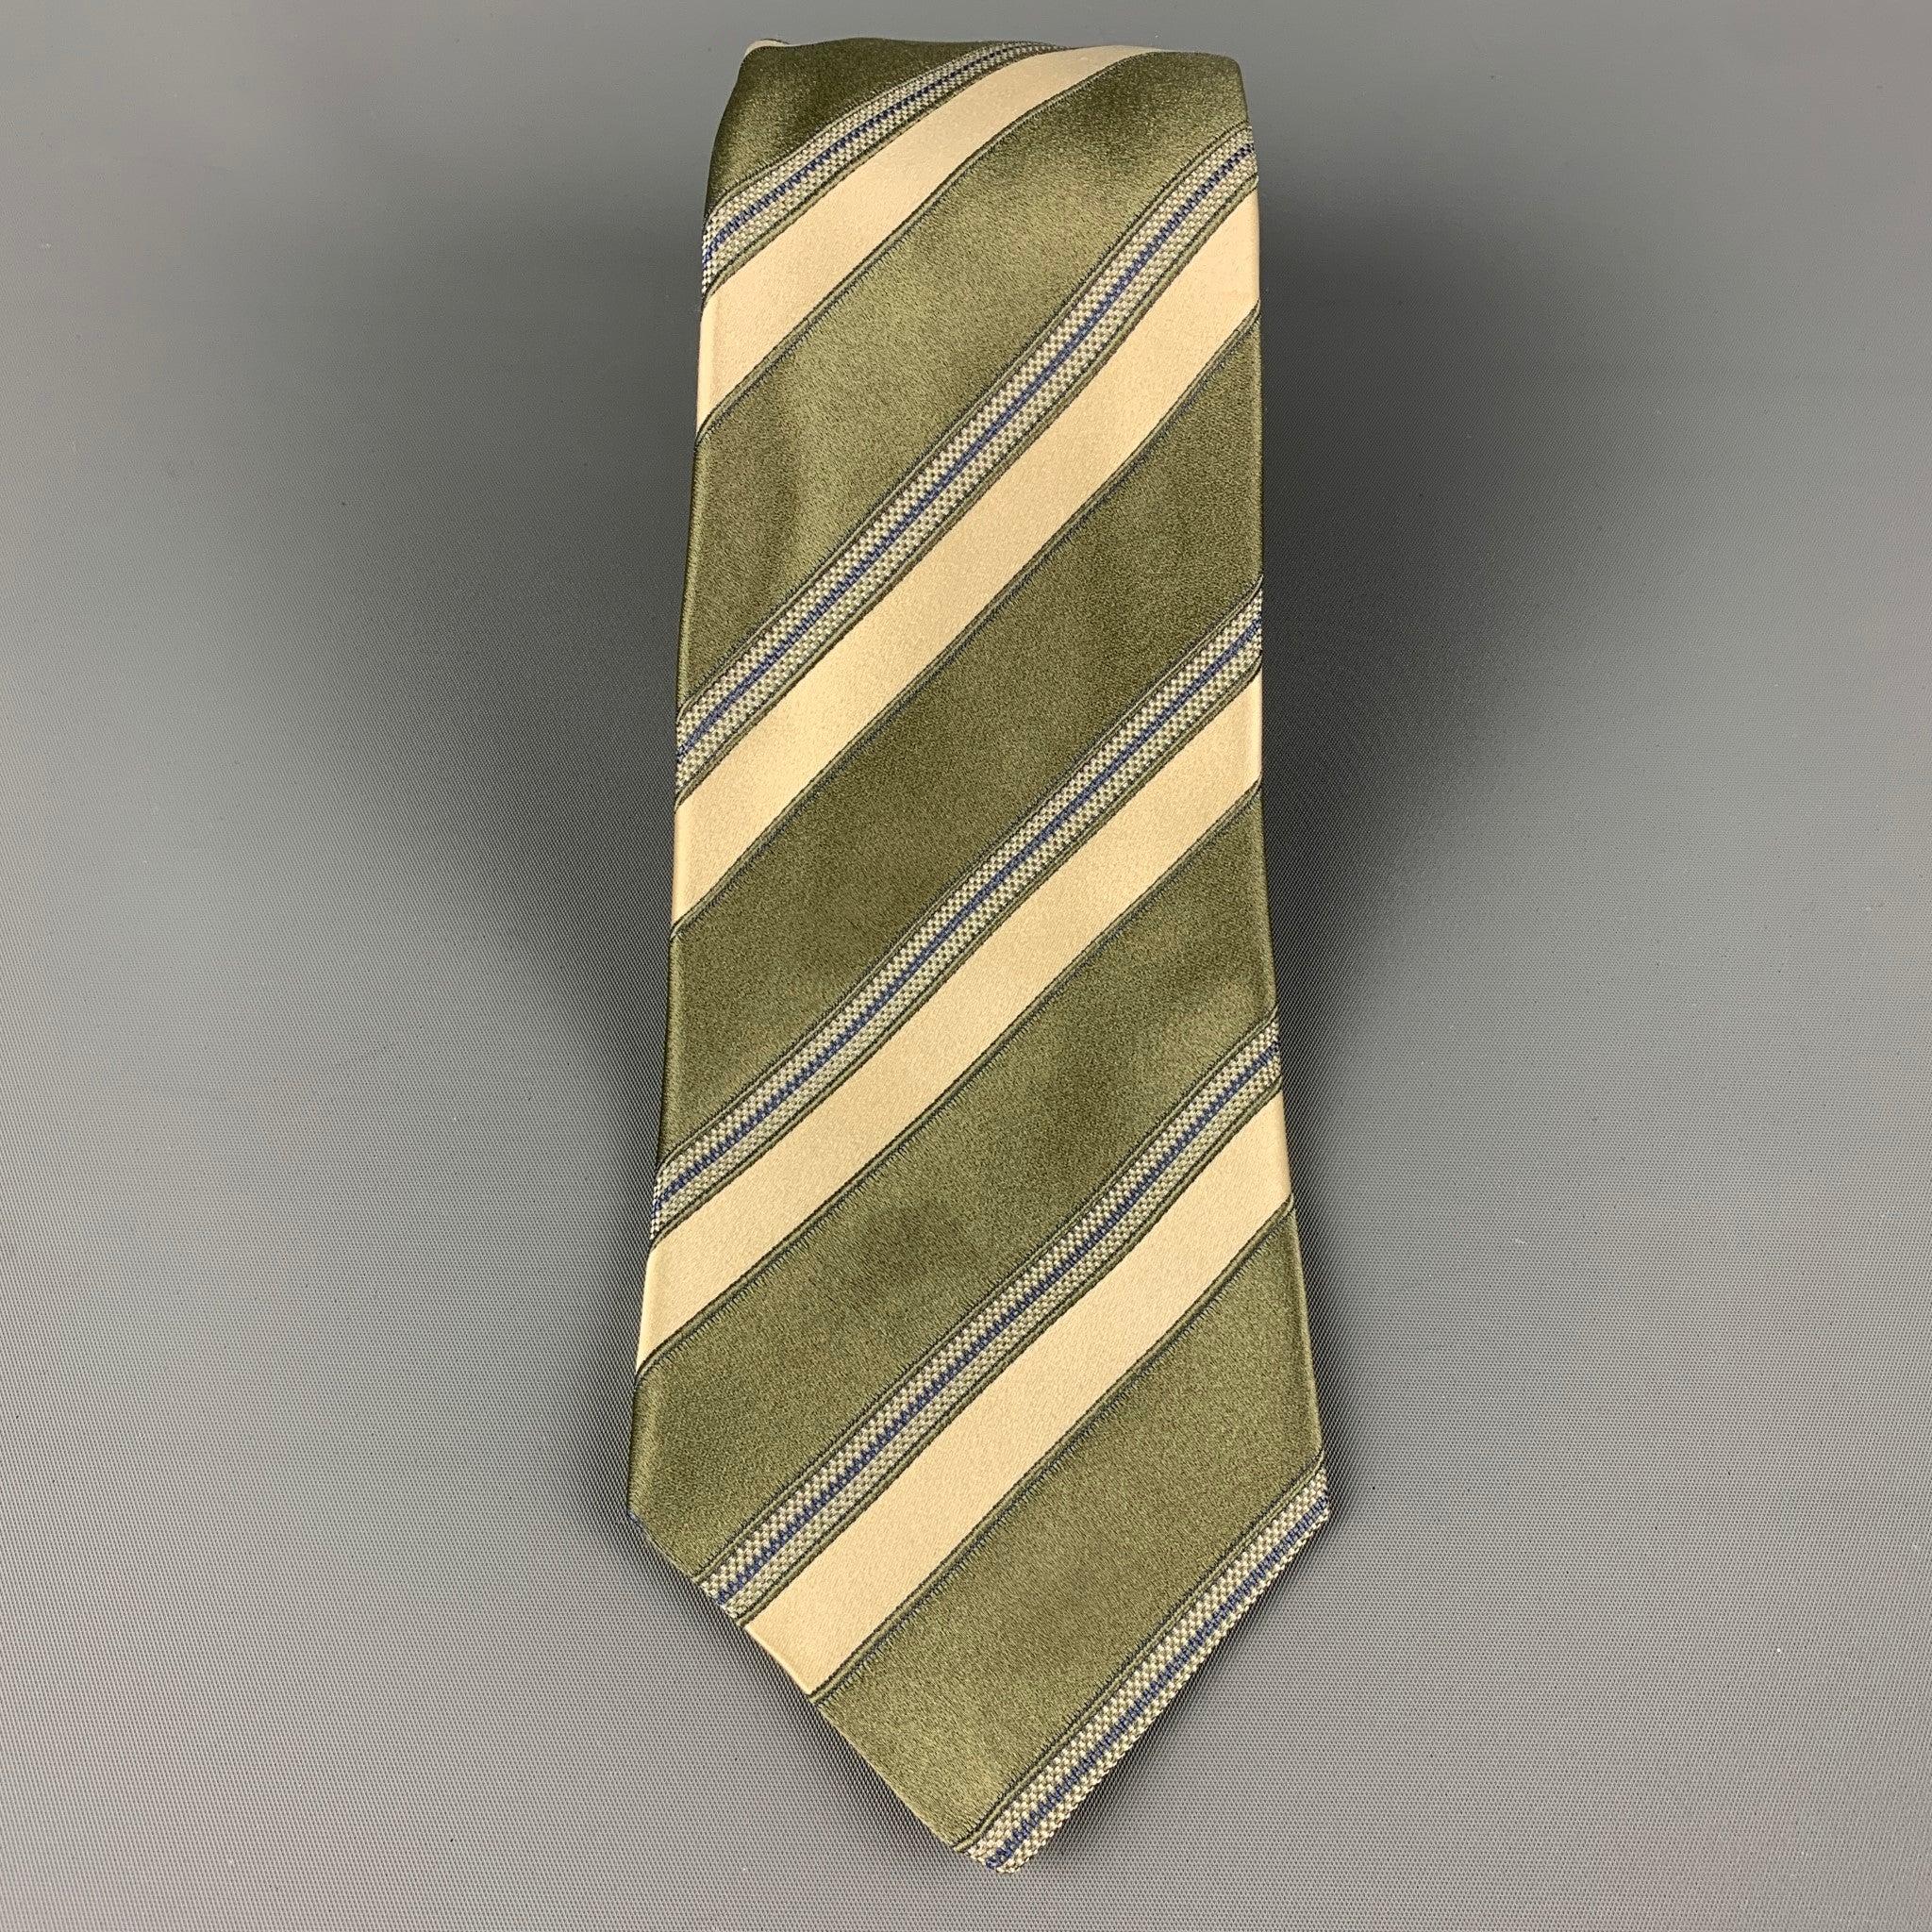 La cravate KITON est en soie jaune et mousse, avec un imprimé à rayures diagonales. Fabriqué en Italie. Bon état d'origine. Légère décoloration. Tel quel.largeur : 3.75 pouces  Longueur : 62 pouces 


  
  
 
Référence Sui Generis : 120377
Catégorie